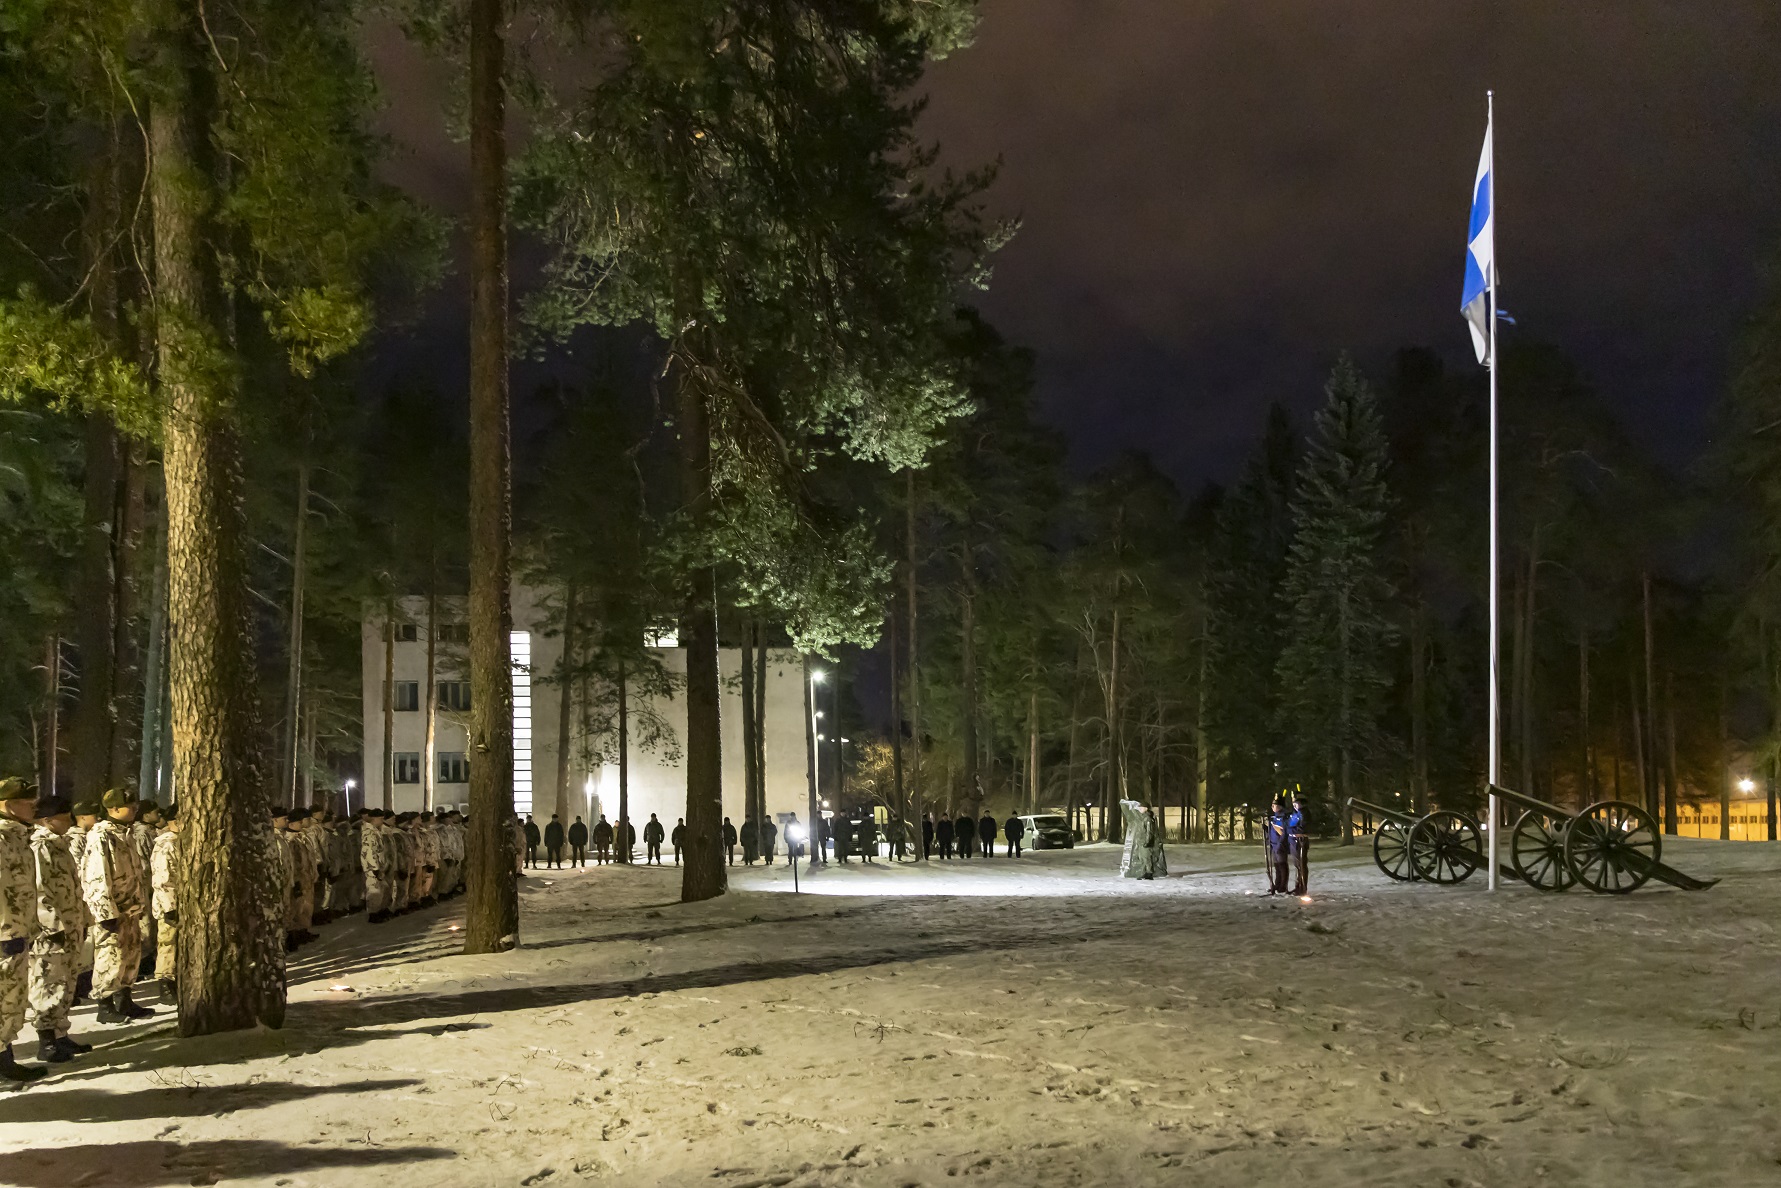 Rivissä sotilaita ja Suomen lippu lipputangossa aamuhämärässä.